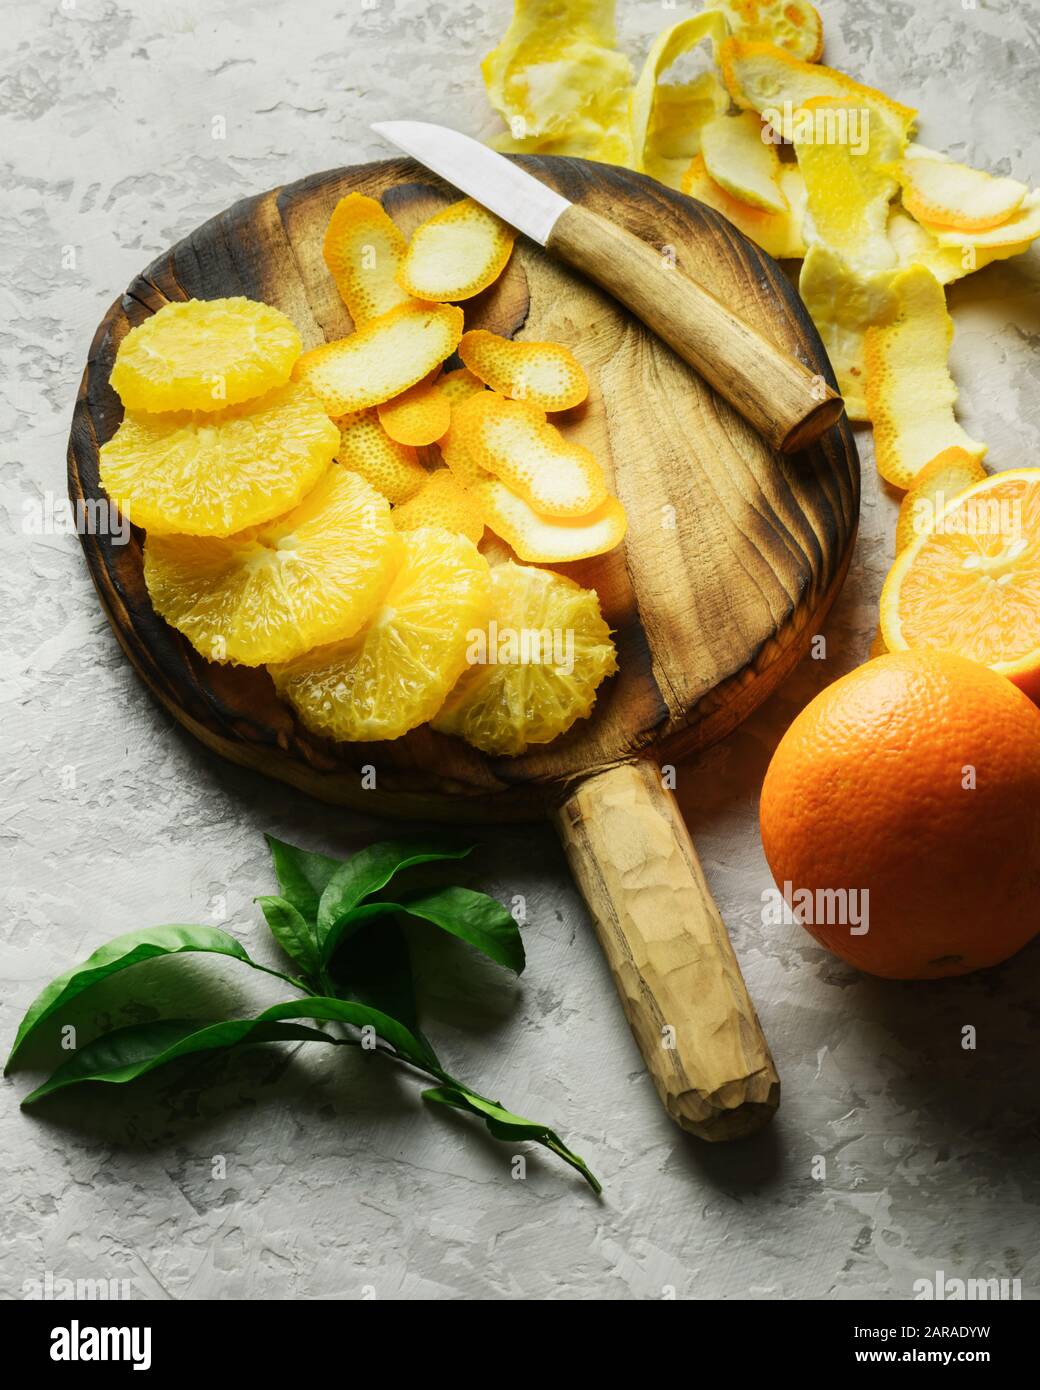 Pezzi arancione sulla lastra grigia closeup. Dieta sana vitamina concetto. Fotografia di cibo Foto Stock